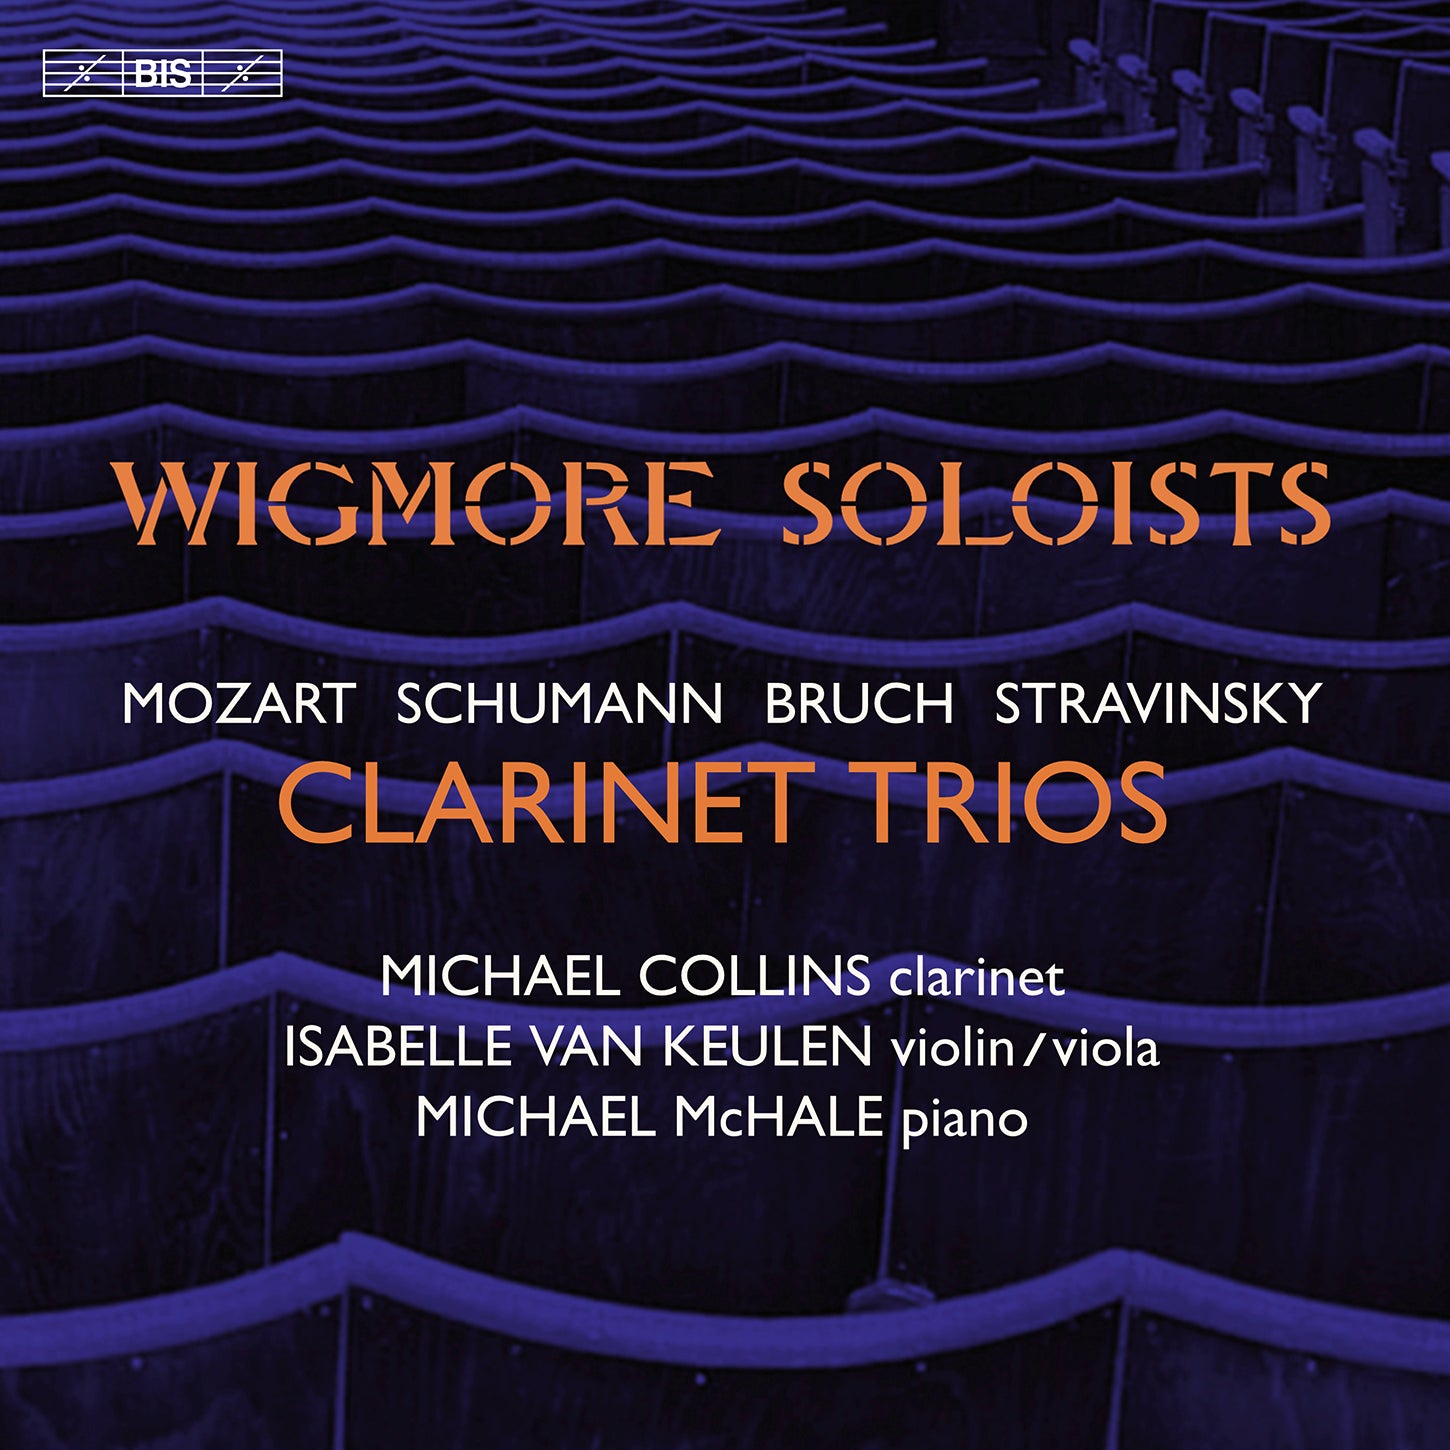 Bruch, Mozart, Schumann & Stravinsky: Clarinet Trios / Wigmore Soloists